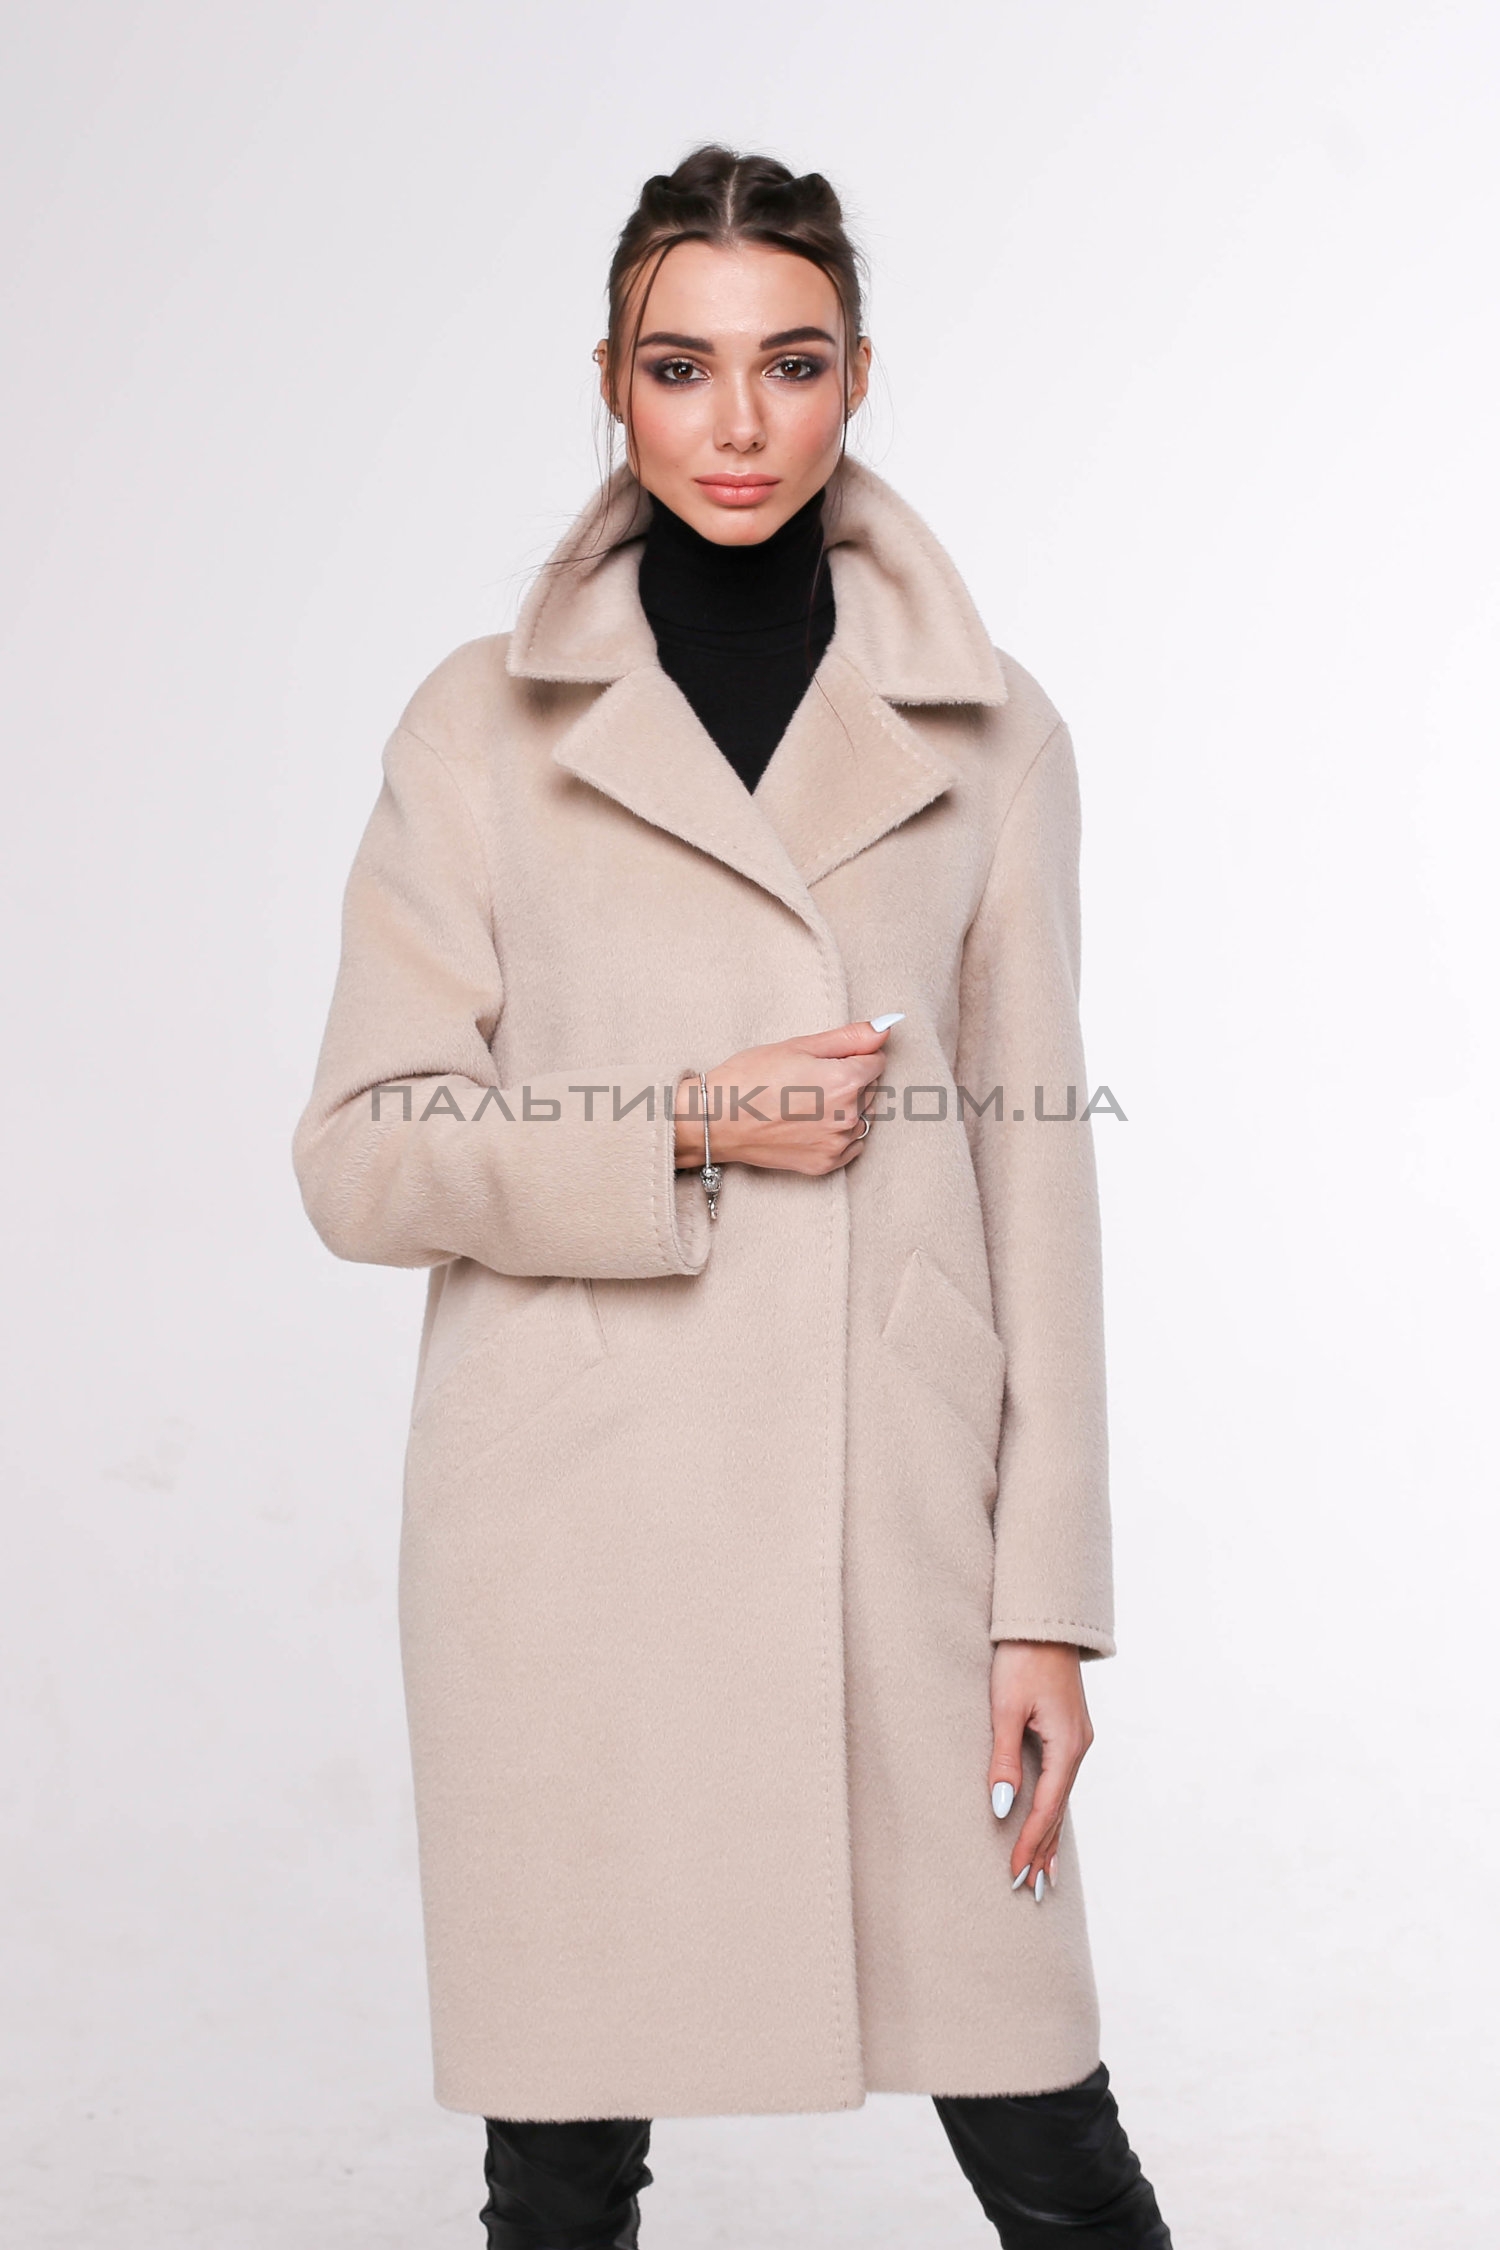  Жіноче пальто № 115